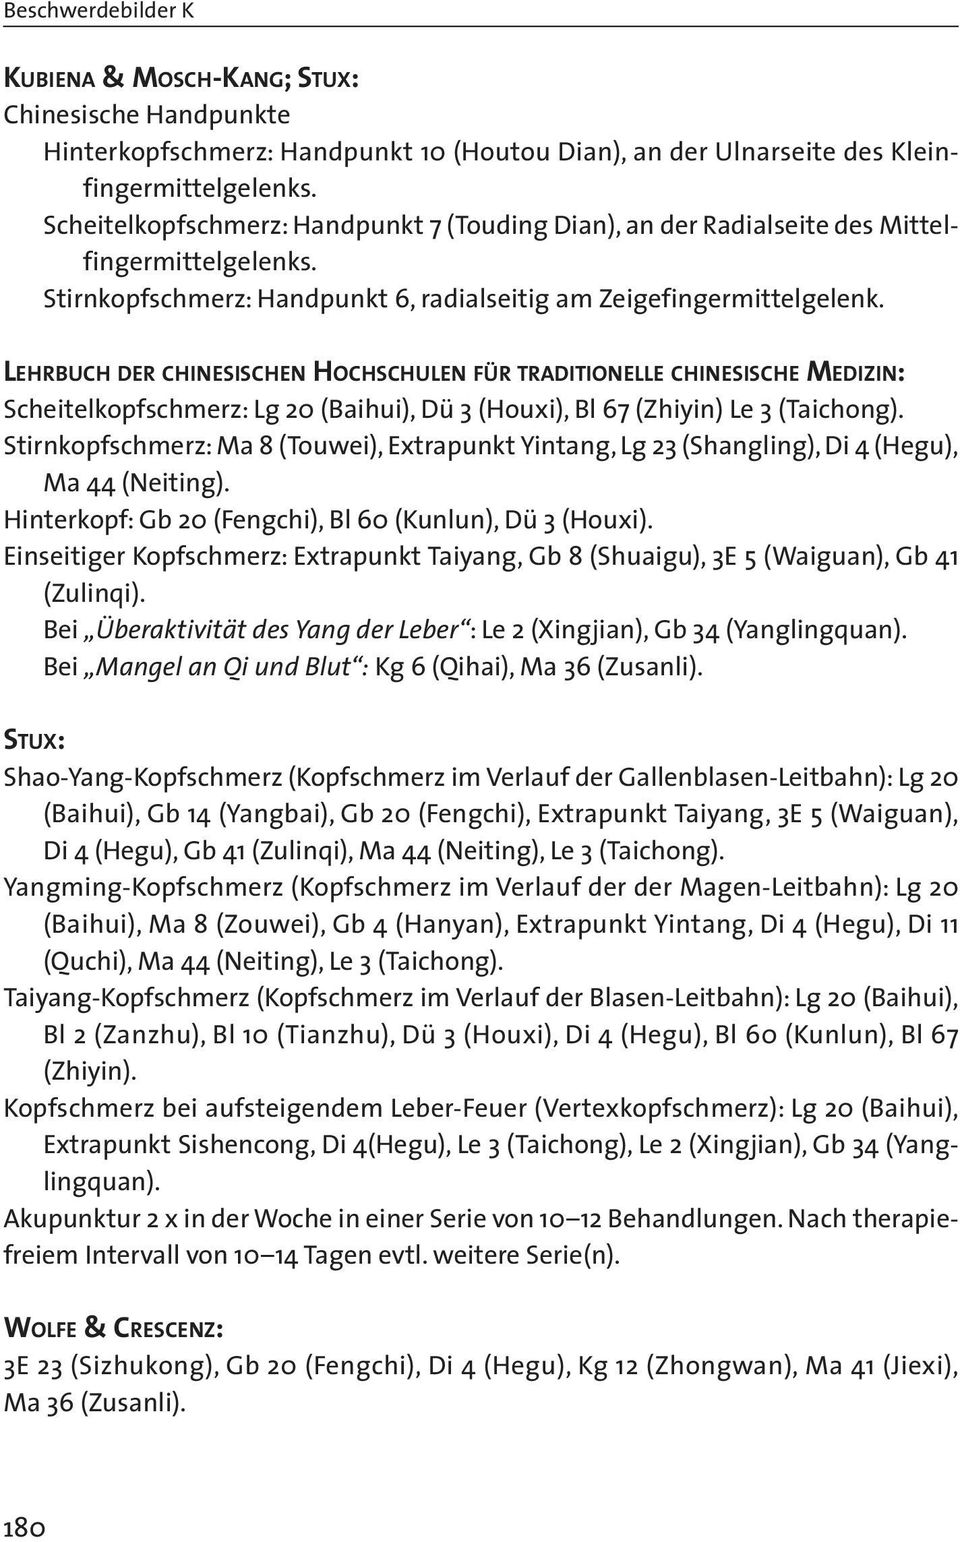 LEHRBUCH DER CHINESISCHEN HOCHSCHULEN FÜR TRADITIONELLE CHINESISCHE MEDIZIN: Scheitelkopfschmerz: Lg 20 (Baihui), Dü 3 (Houxi), Bl 67 (Zhiyin) Le 3 (Taichong).